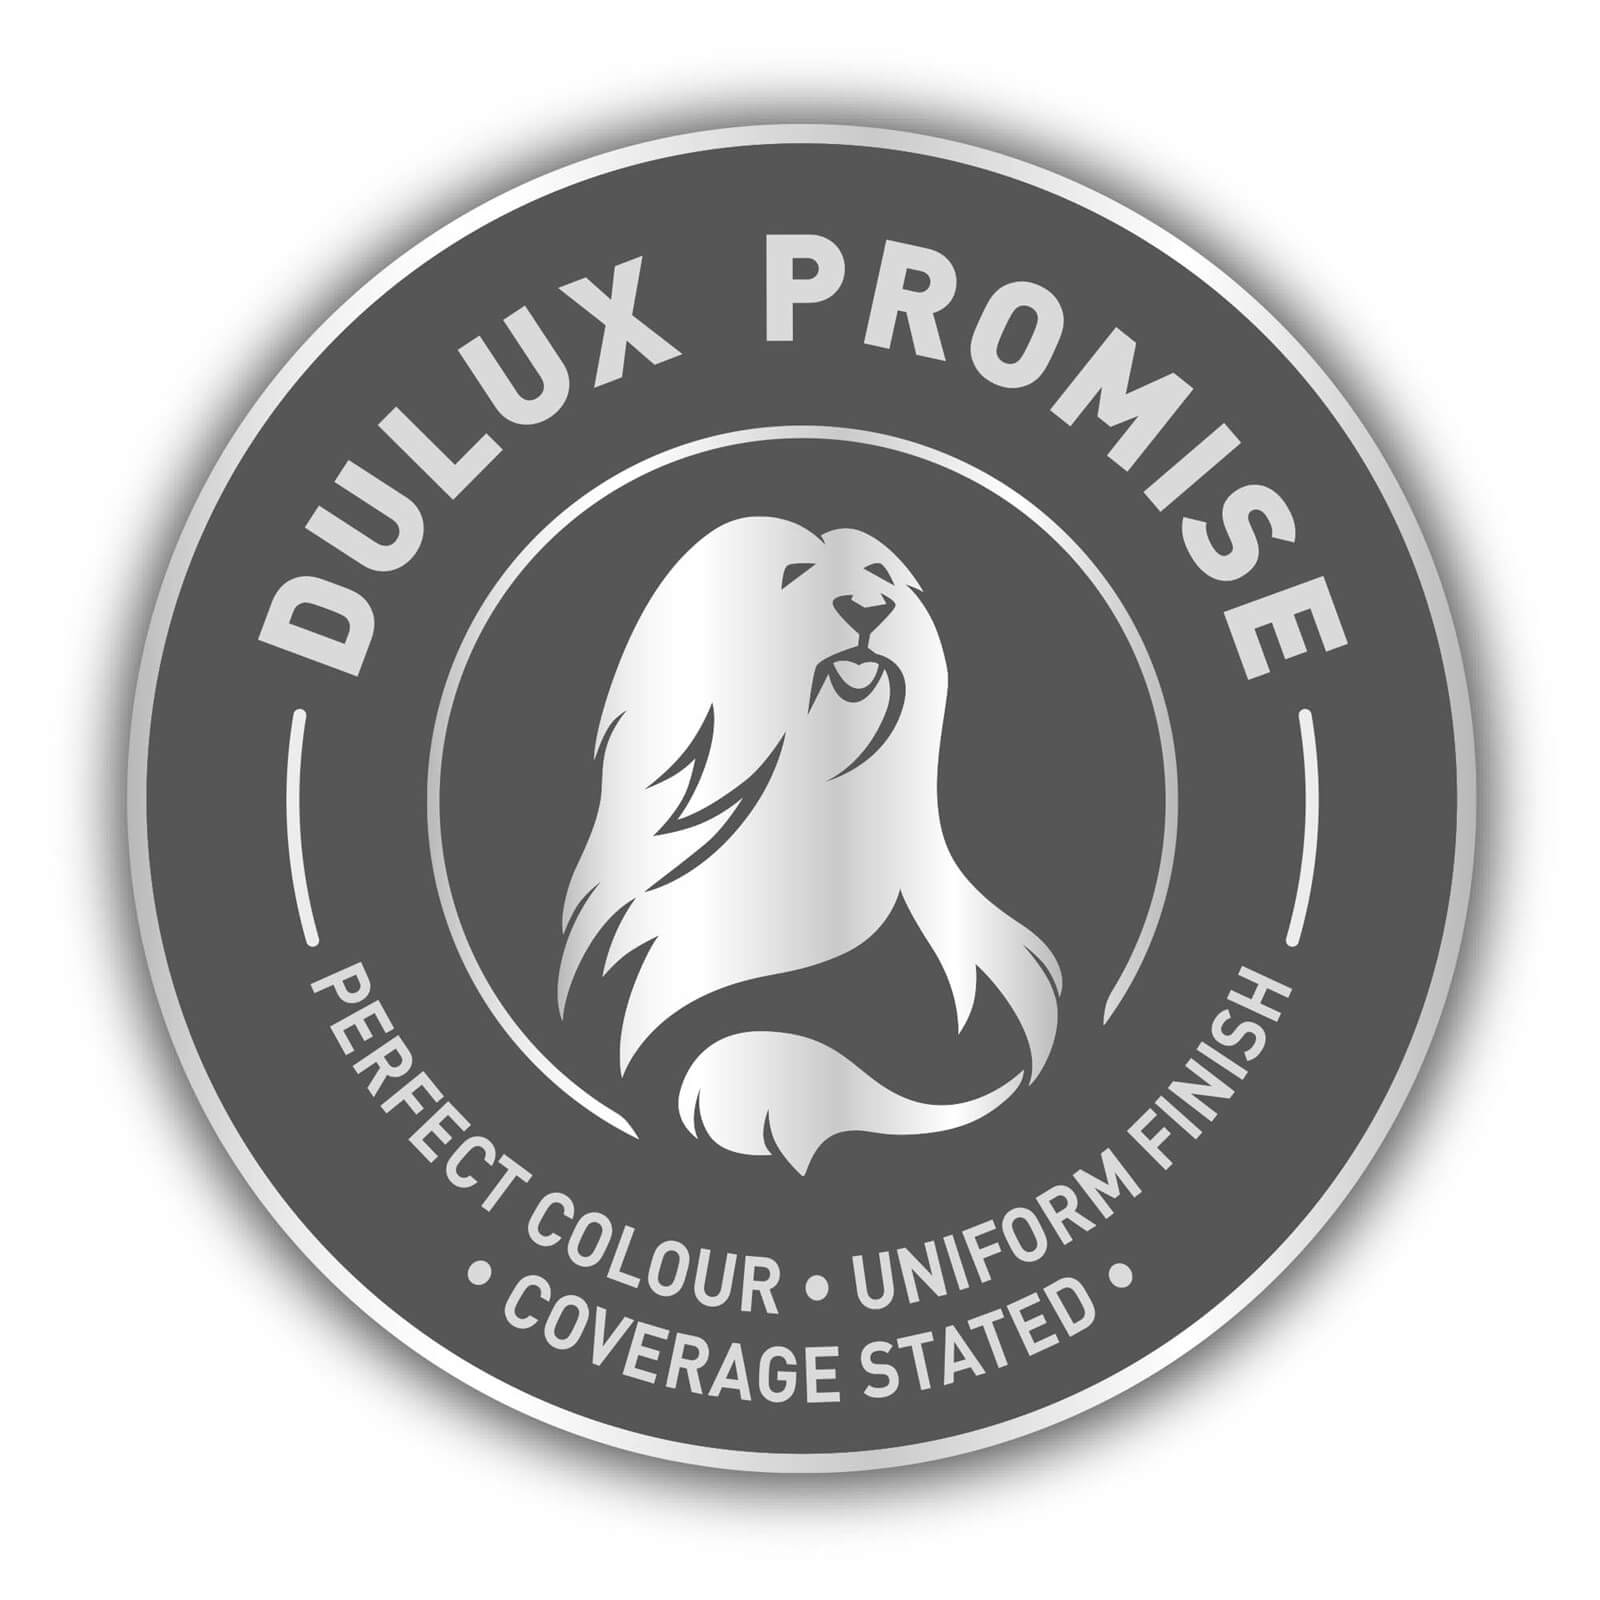 Dulux Silk Emulsion Paint Almond White - 5L